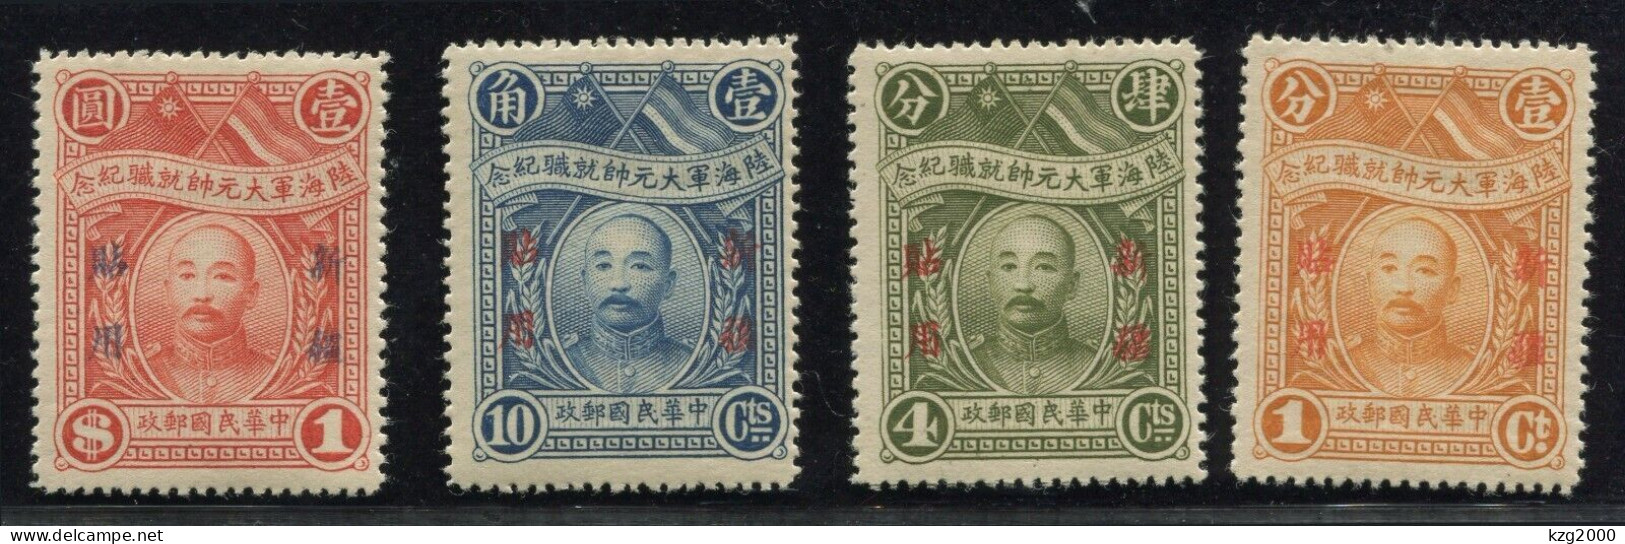 China  ROC Stamp 1928 Army & Navy Grand Marshal Use In Sinkiang - Xinjiang 1915-49